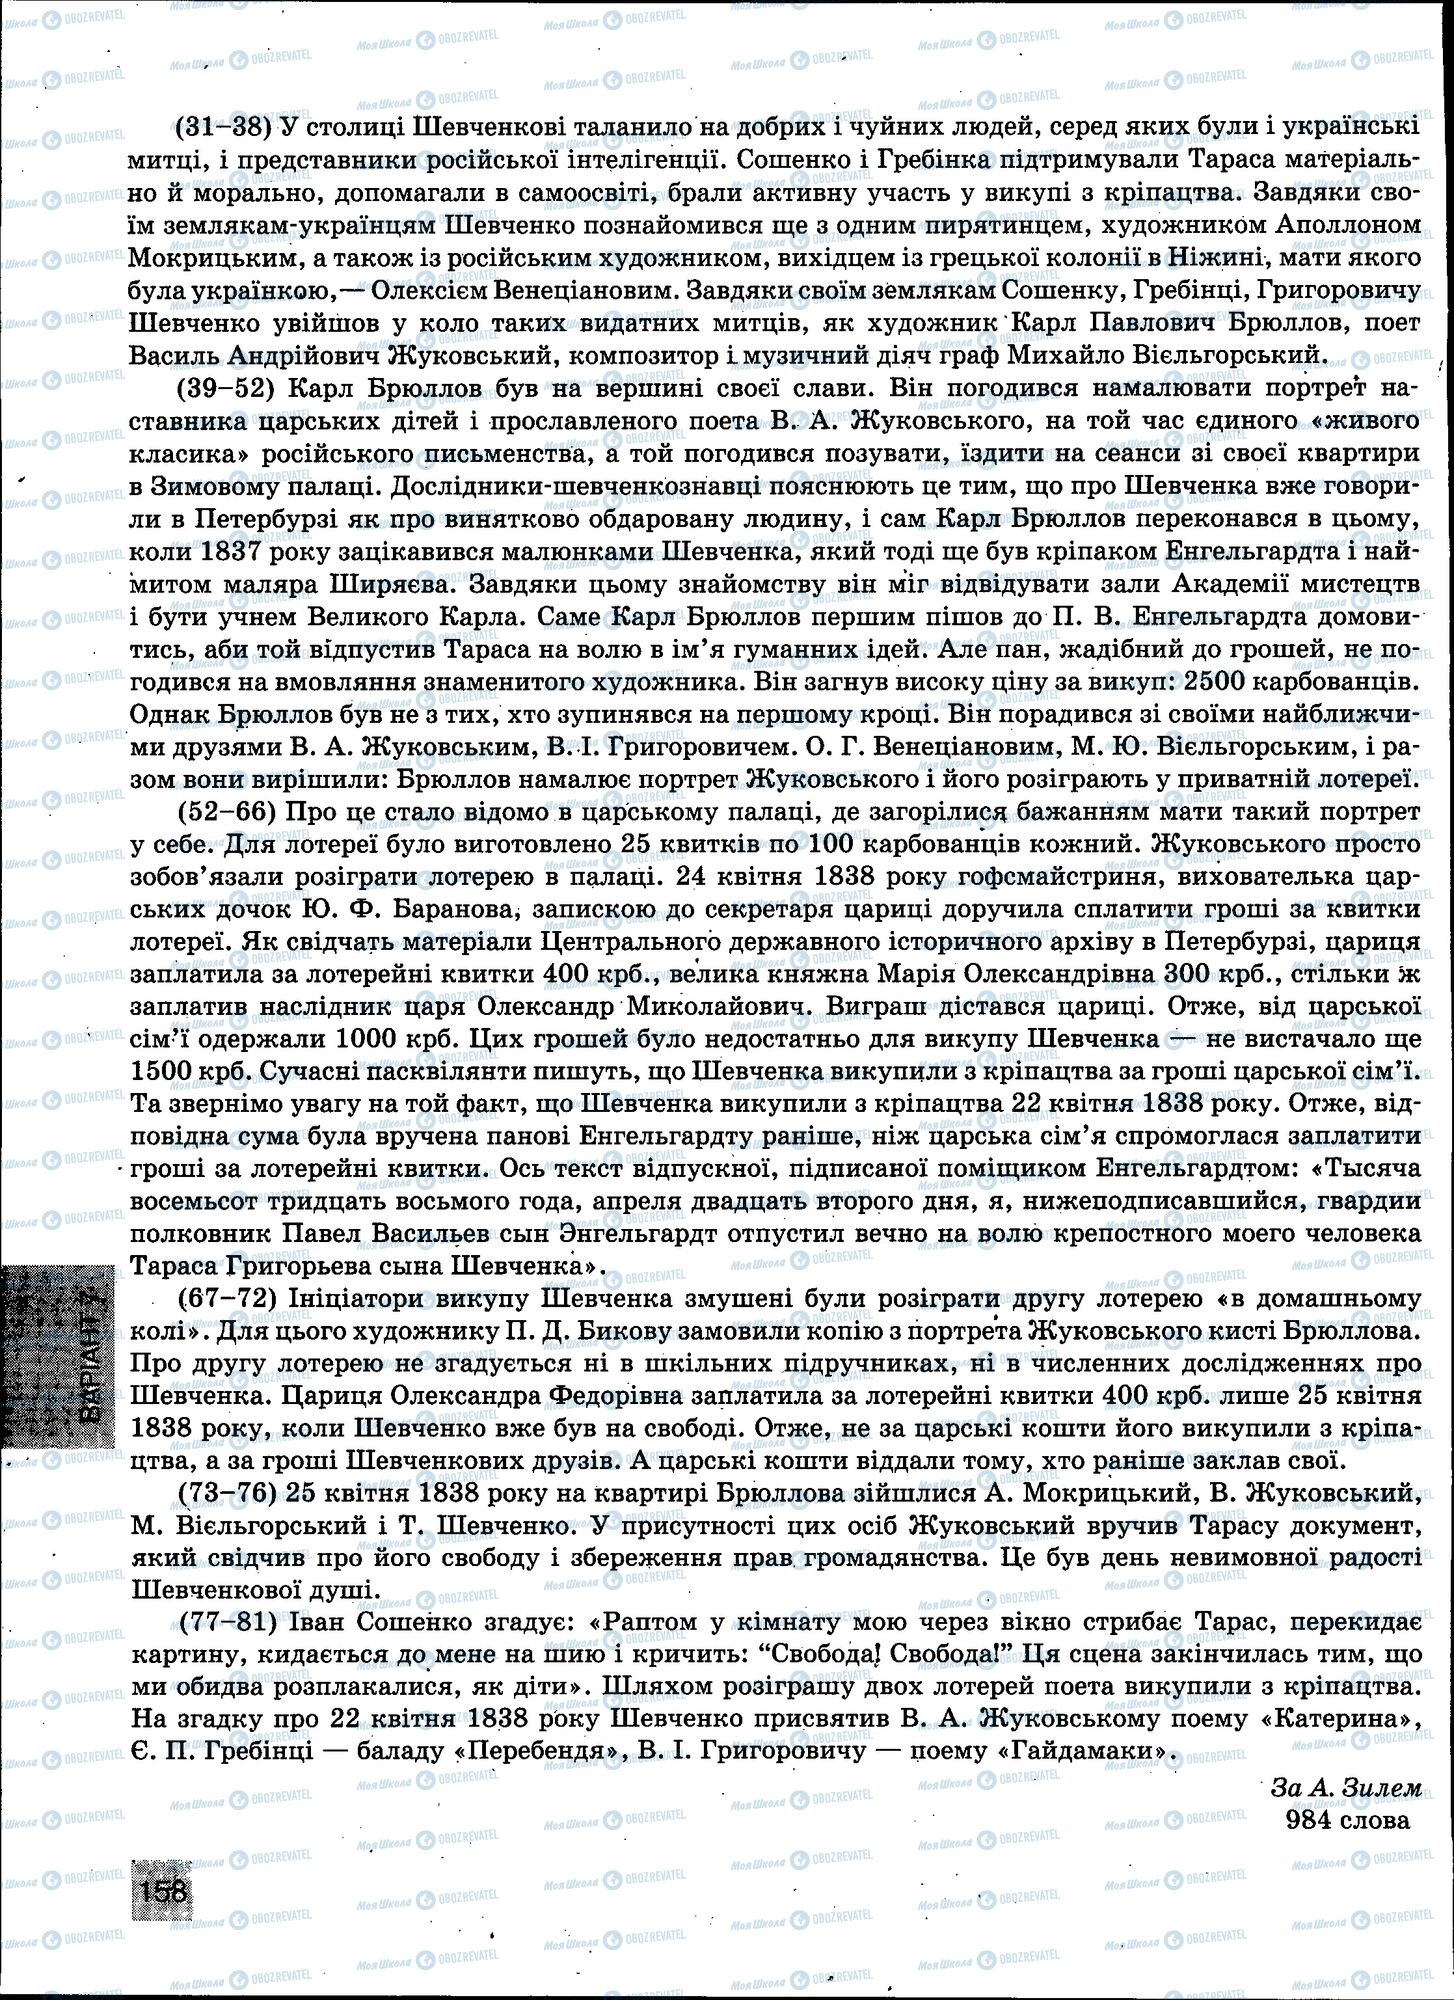 ЗНО Укр мова 11 класс страница 158